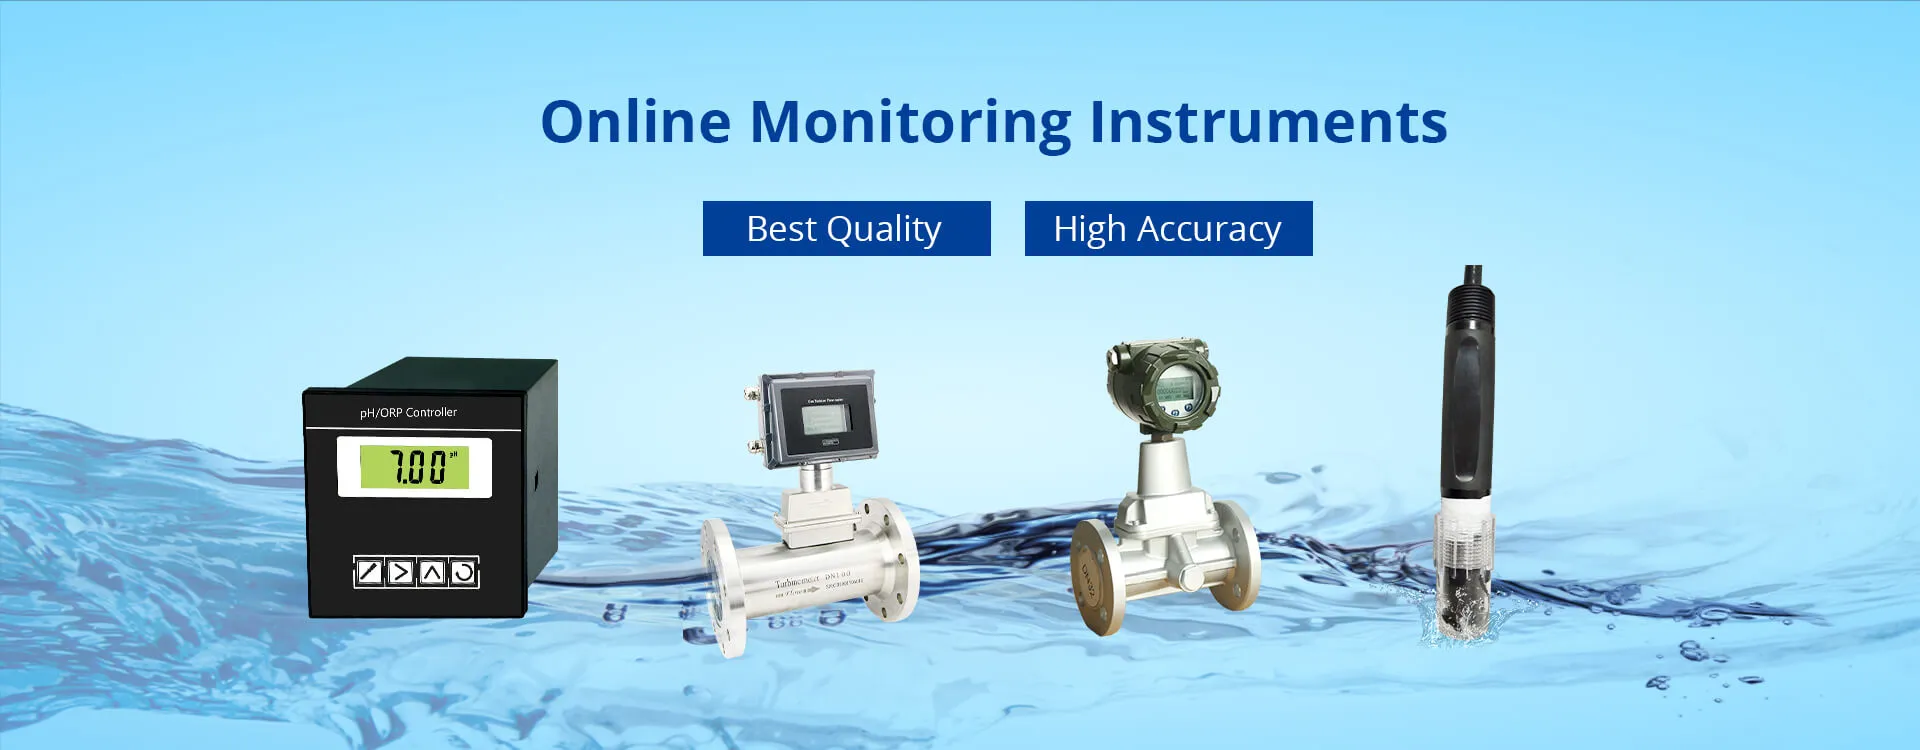 Instrumentos de monitoramento de água online